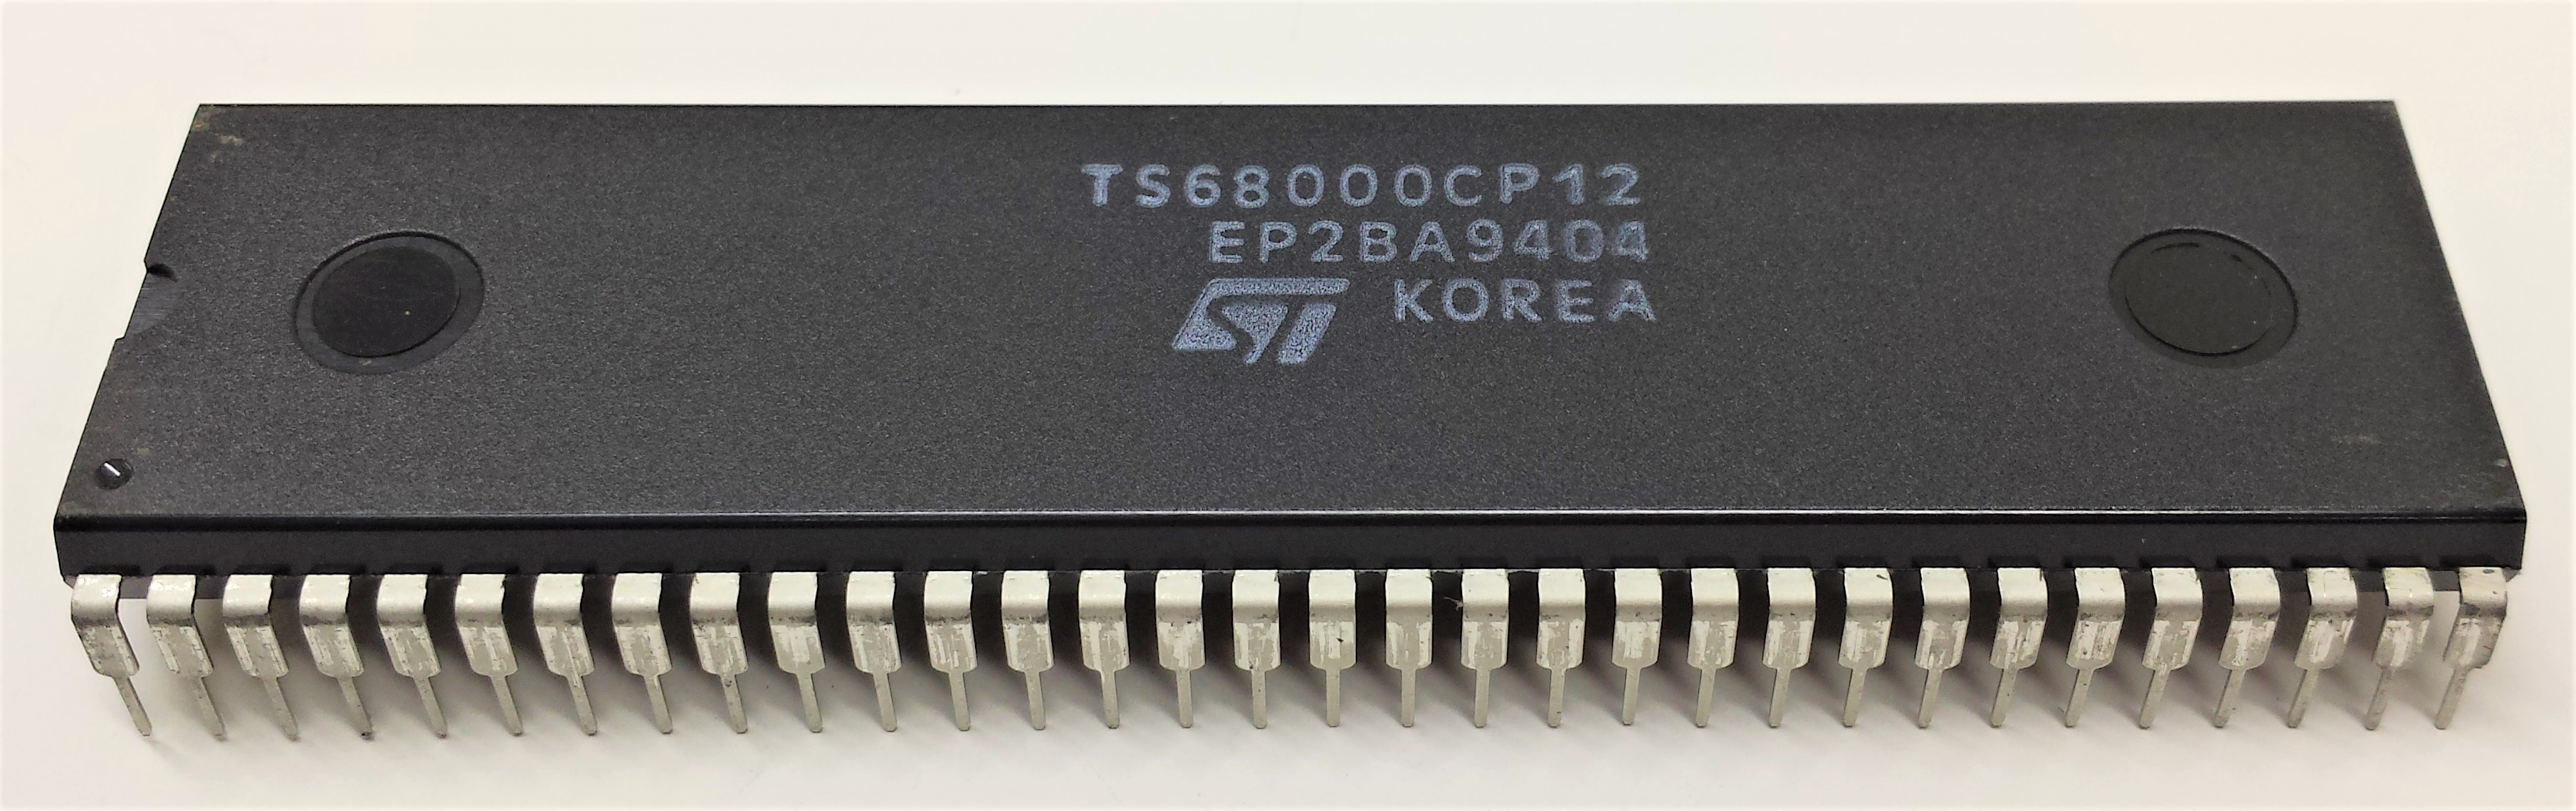 TS68000CP12